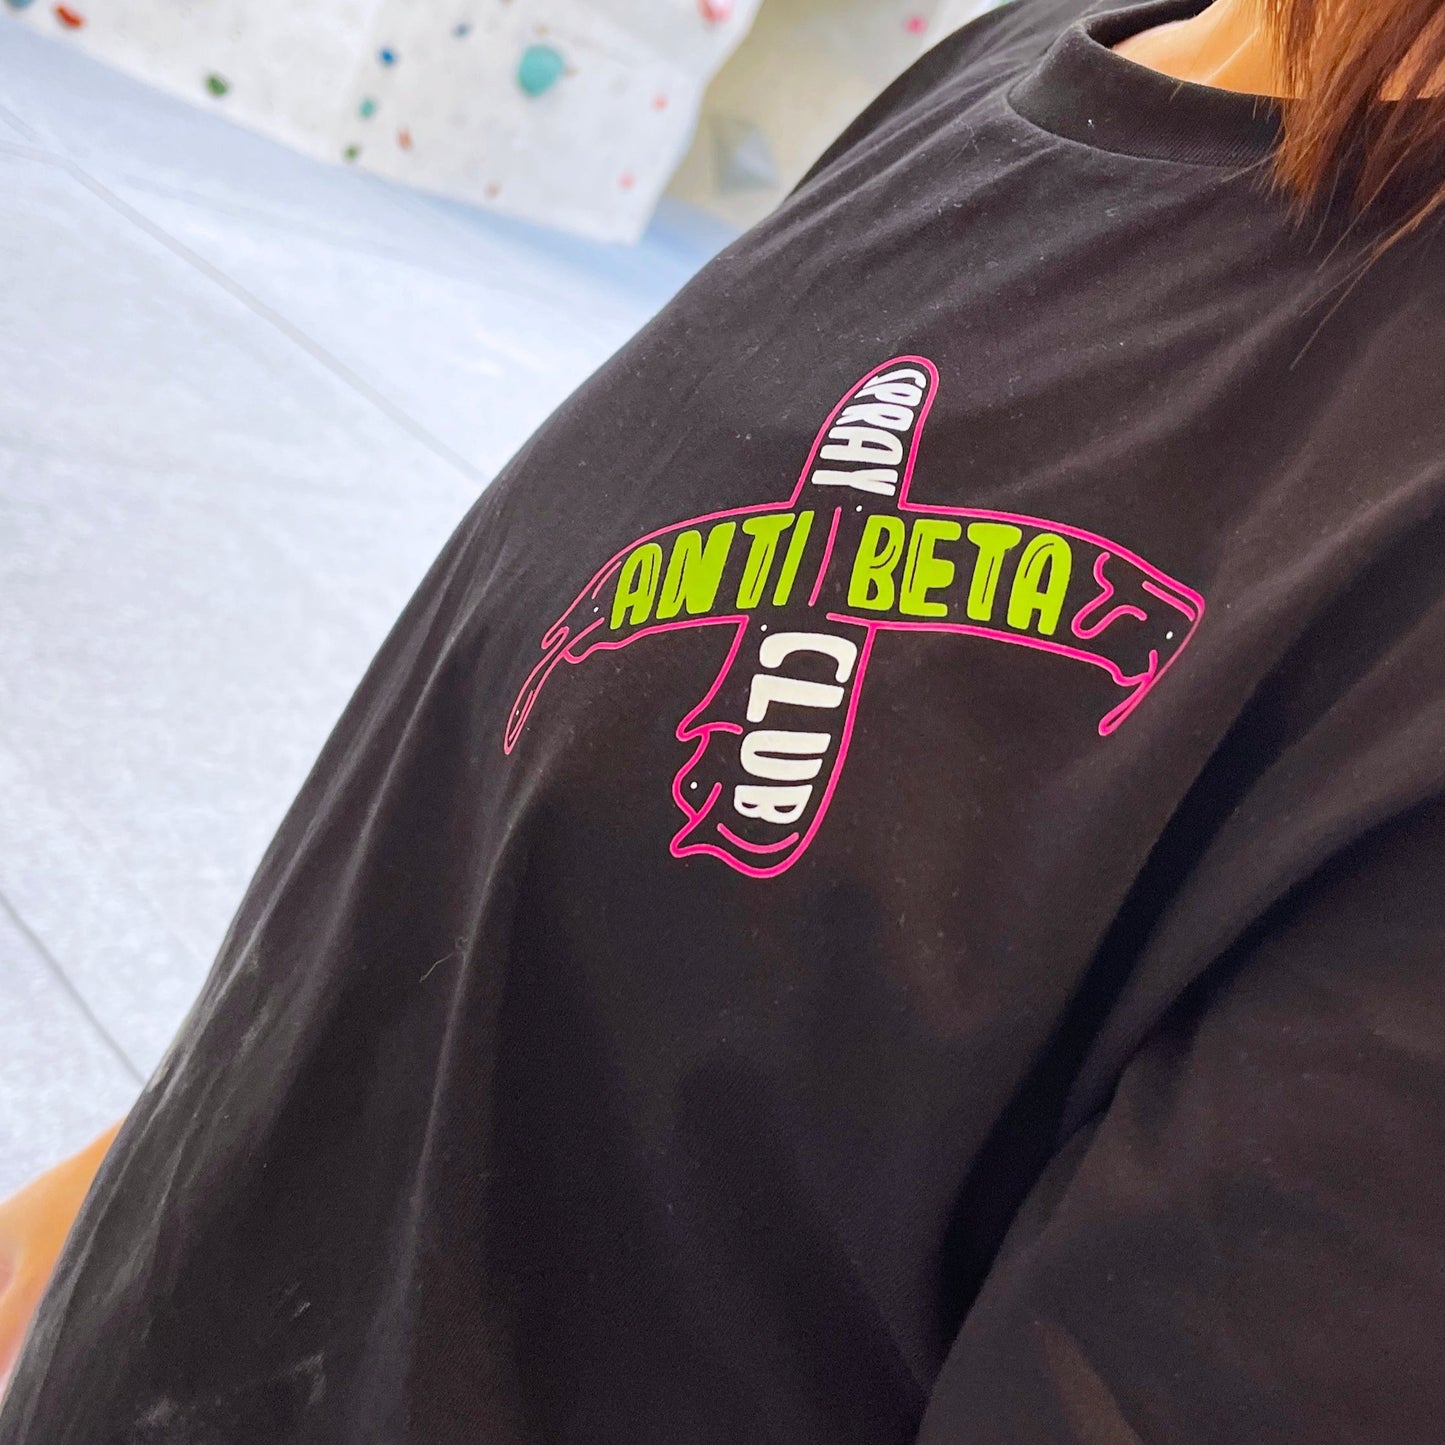 Anti Beta Spray Club T-Shirt